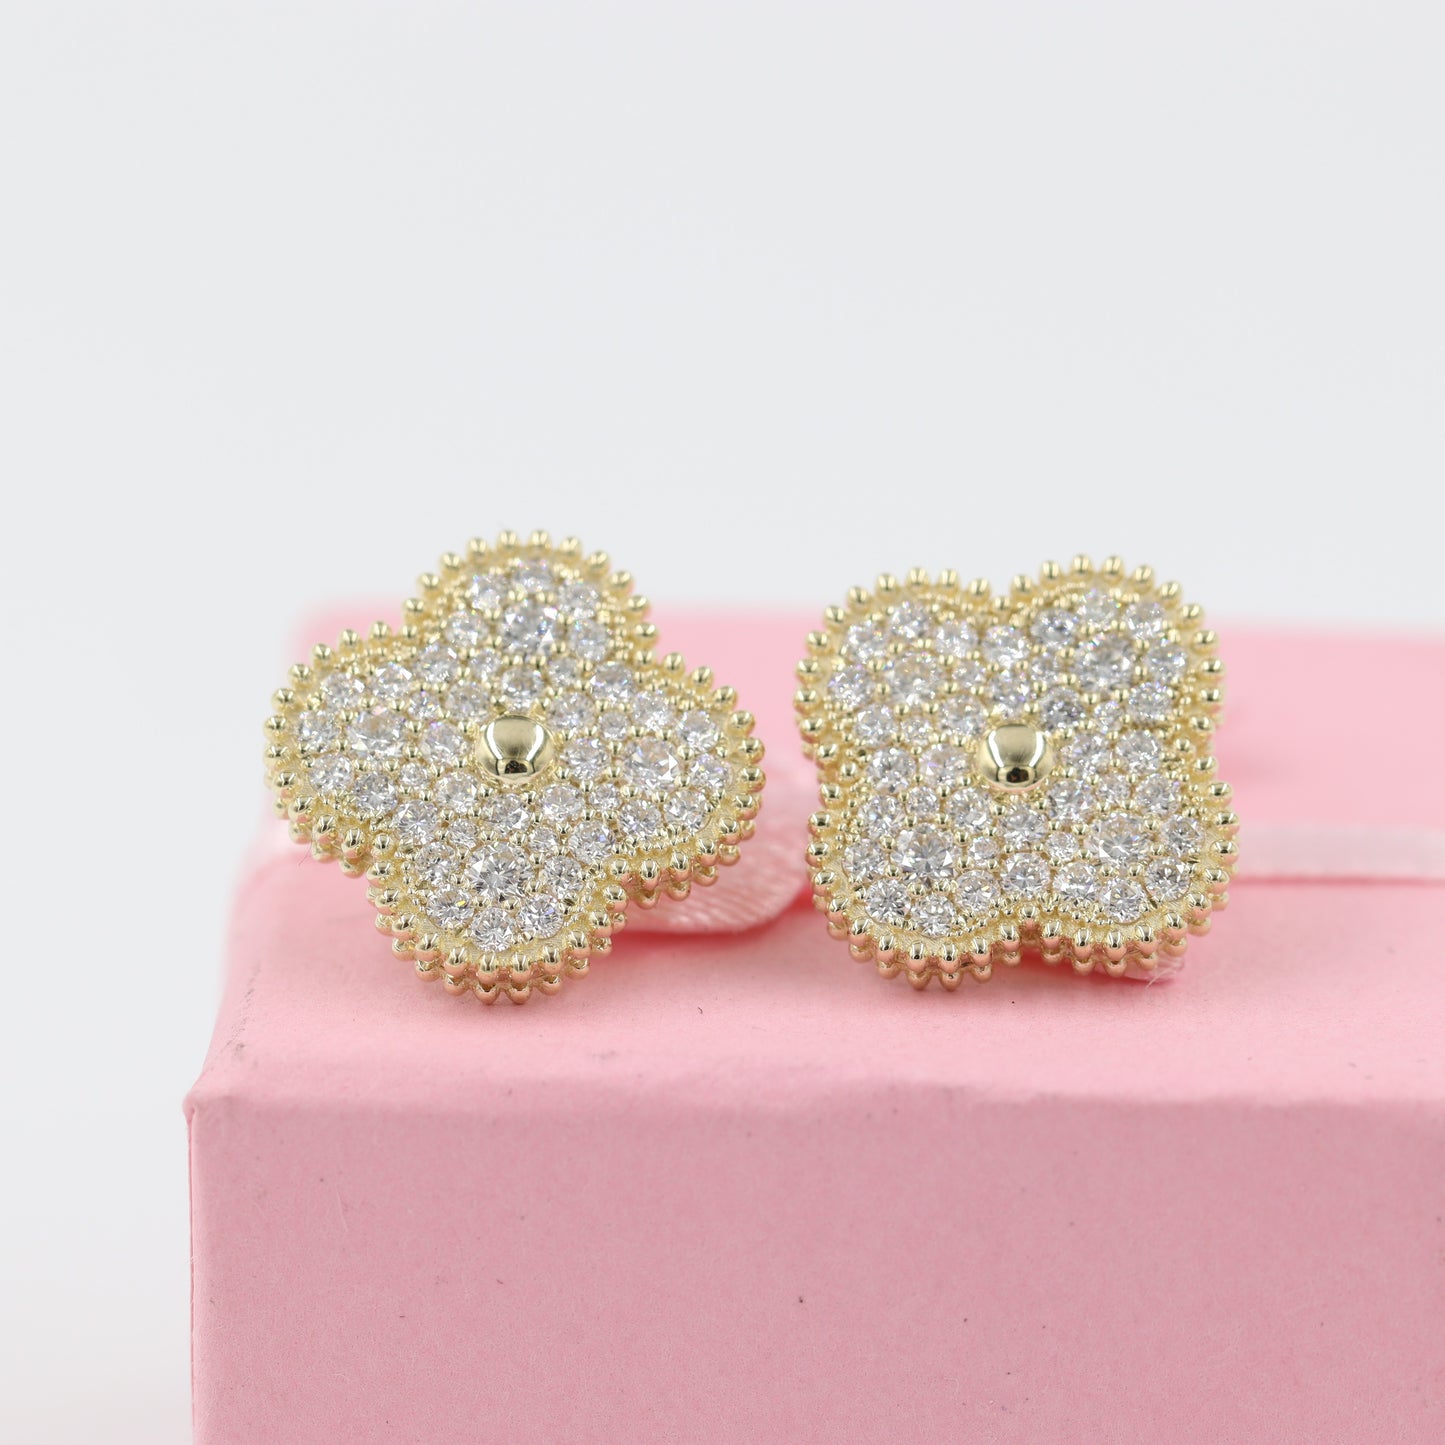 15mm Diamond Clover Earrings/ 14 and 18K Clover Classic Cluster Stud Earrings/ Natural Diamond Stud Earrings 88 Stones/ Anniversary Gift